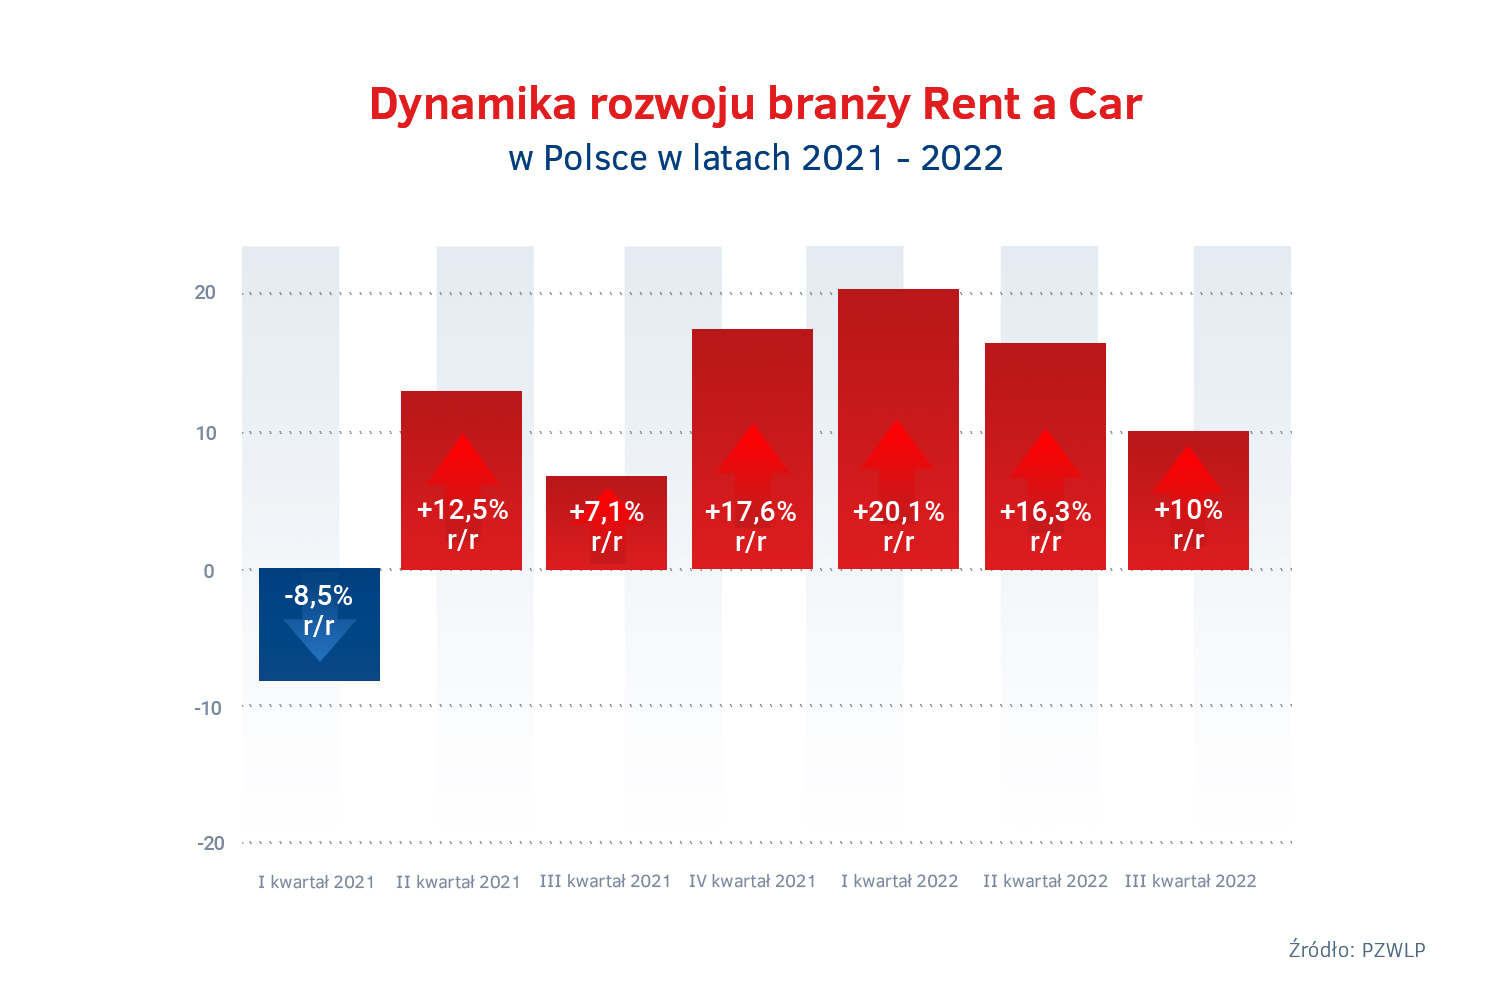 Tempo wzrostu Rent a Car po III kw. 2022